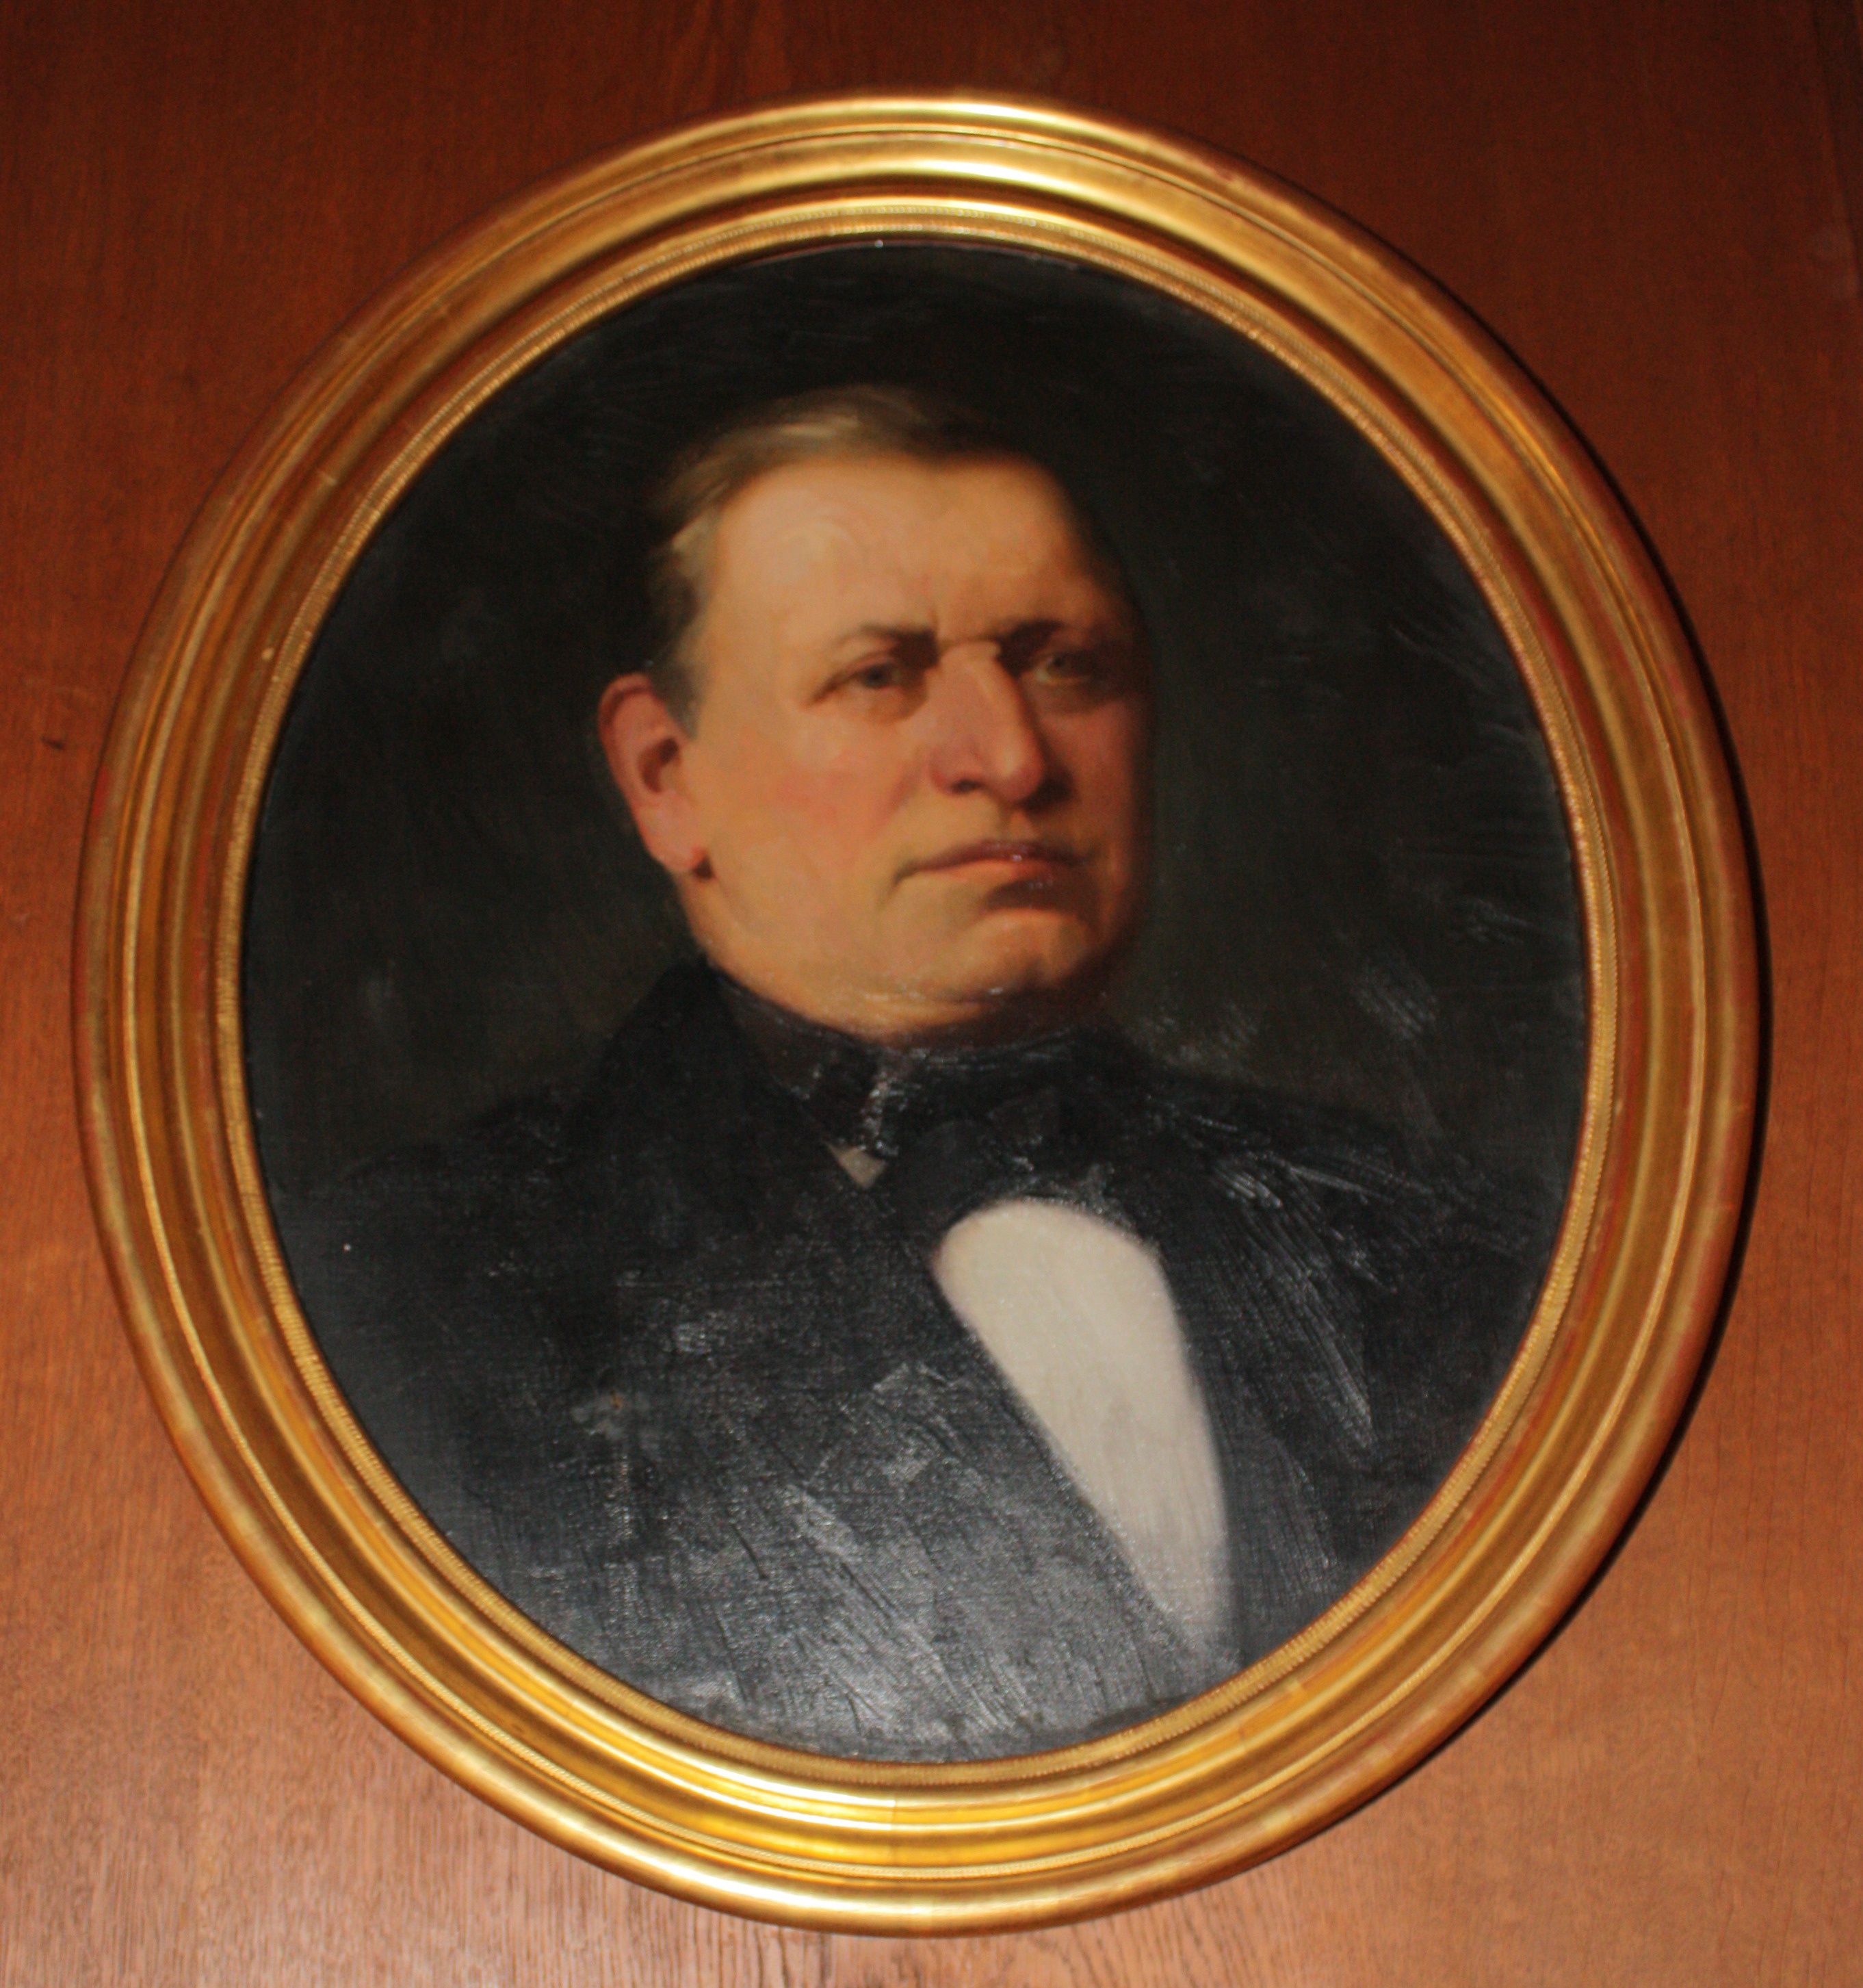  Gemeindevorsteher Carl Willmann (1867-1874)